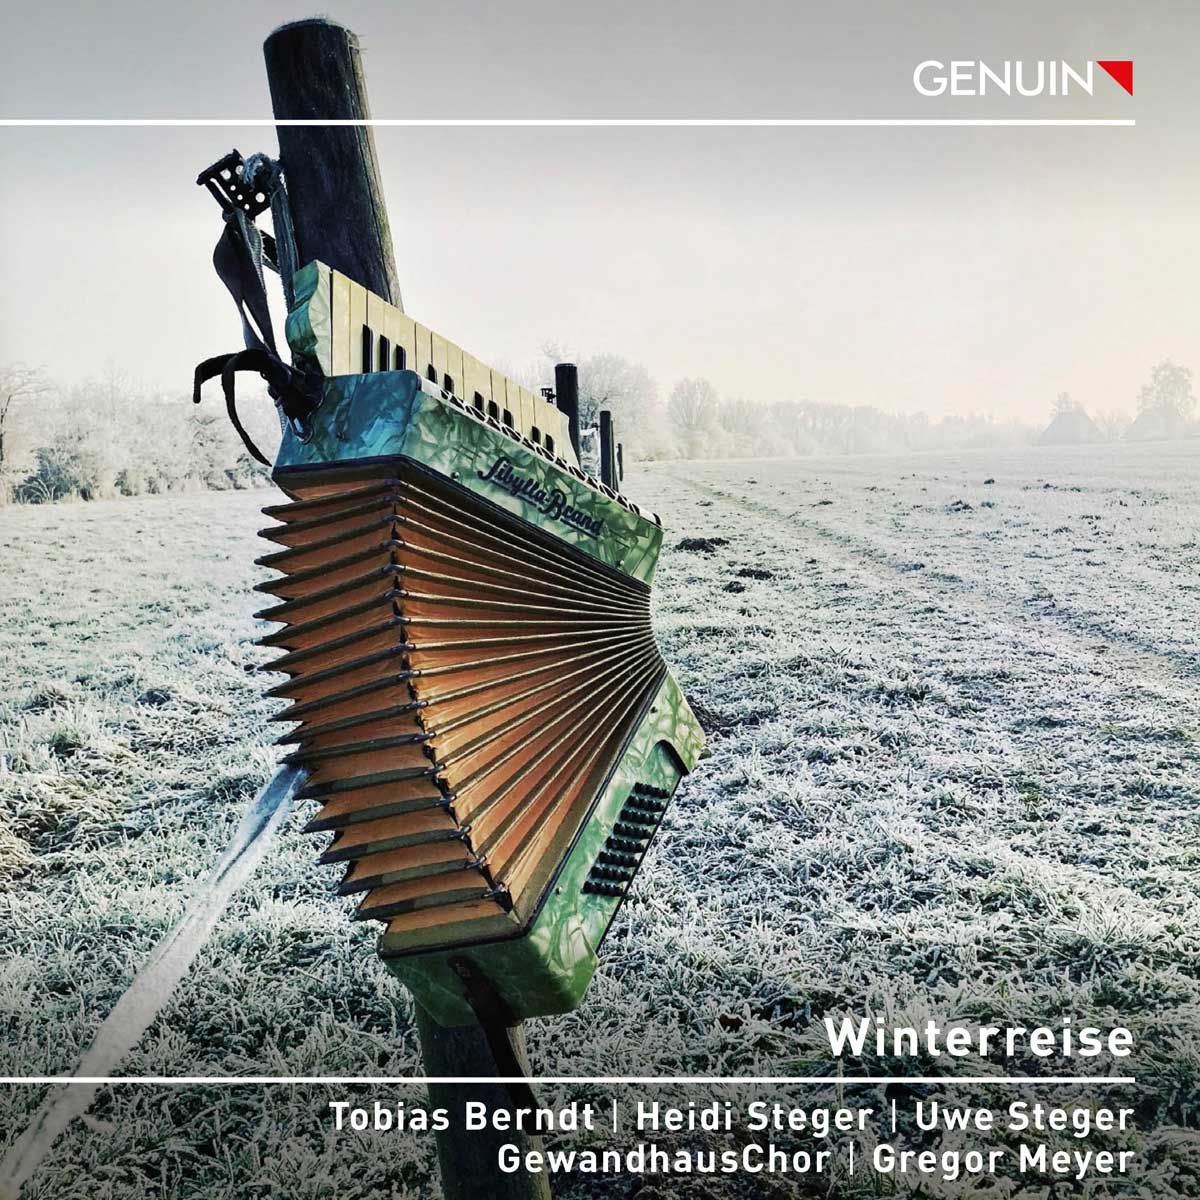 CD album cover 'Winterreise' (GEN 23847) with Tobias Berndt, Heidi Steger, Uwe Steger, GewandhausChor, Gregor  Meyer